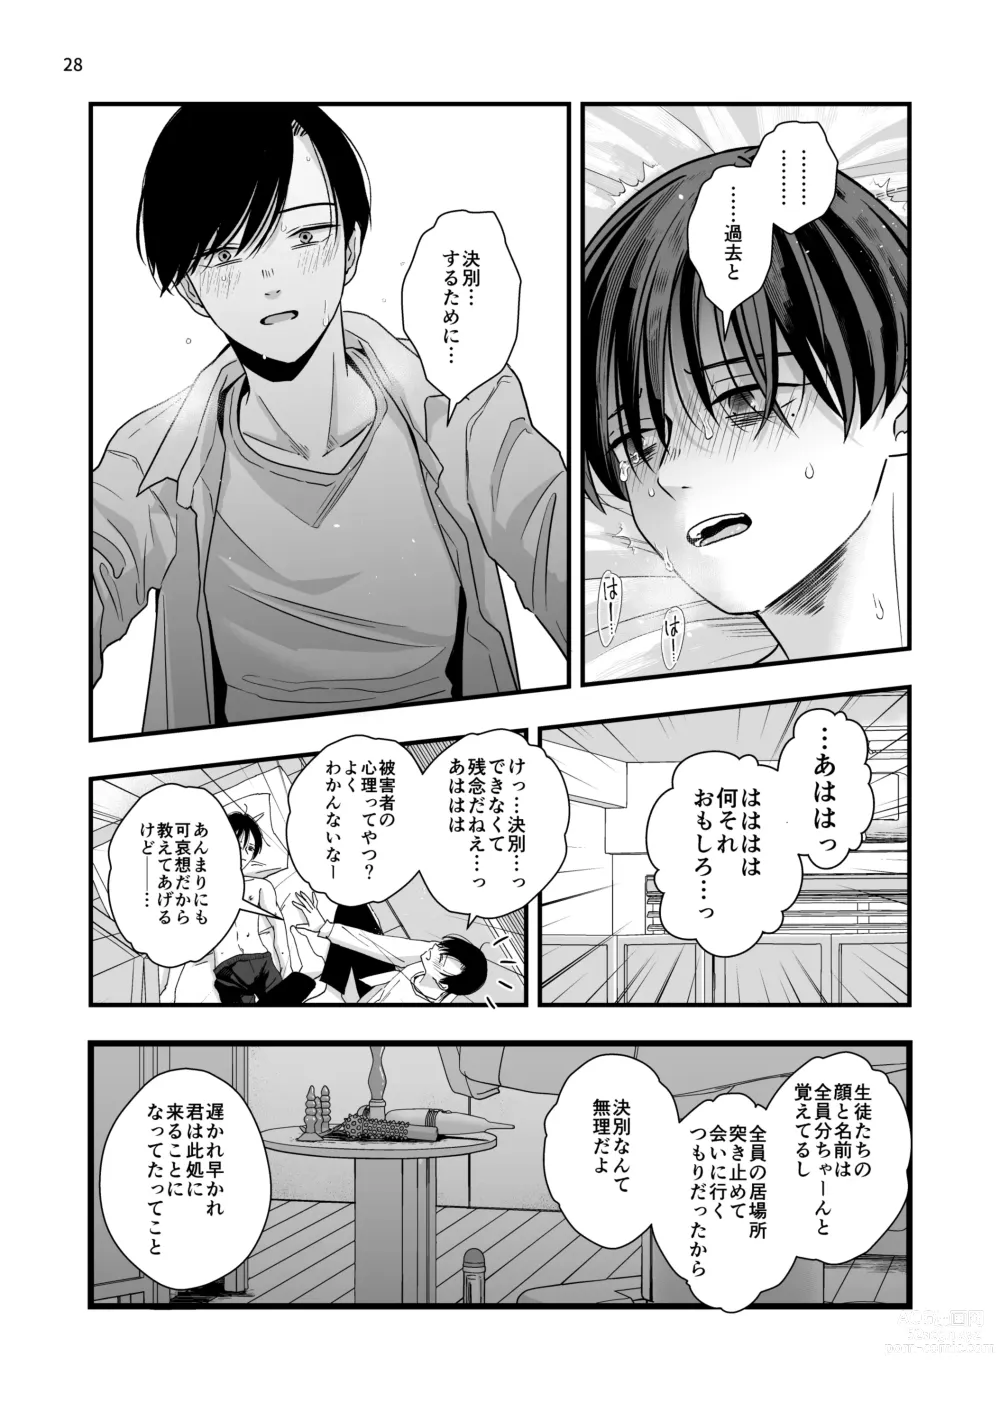 Page 28 of doujinshi Nananen Mae no Toge